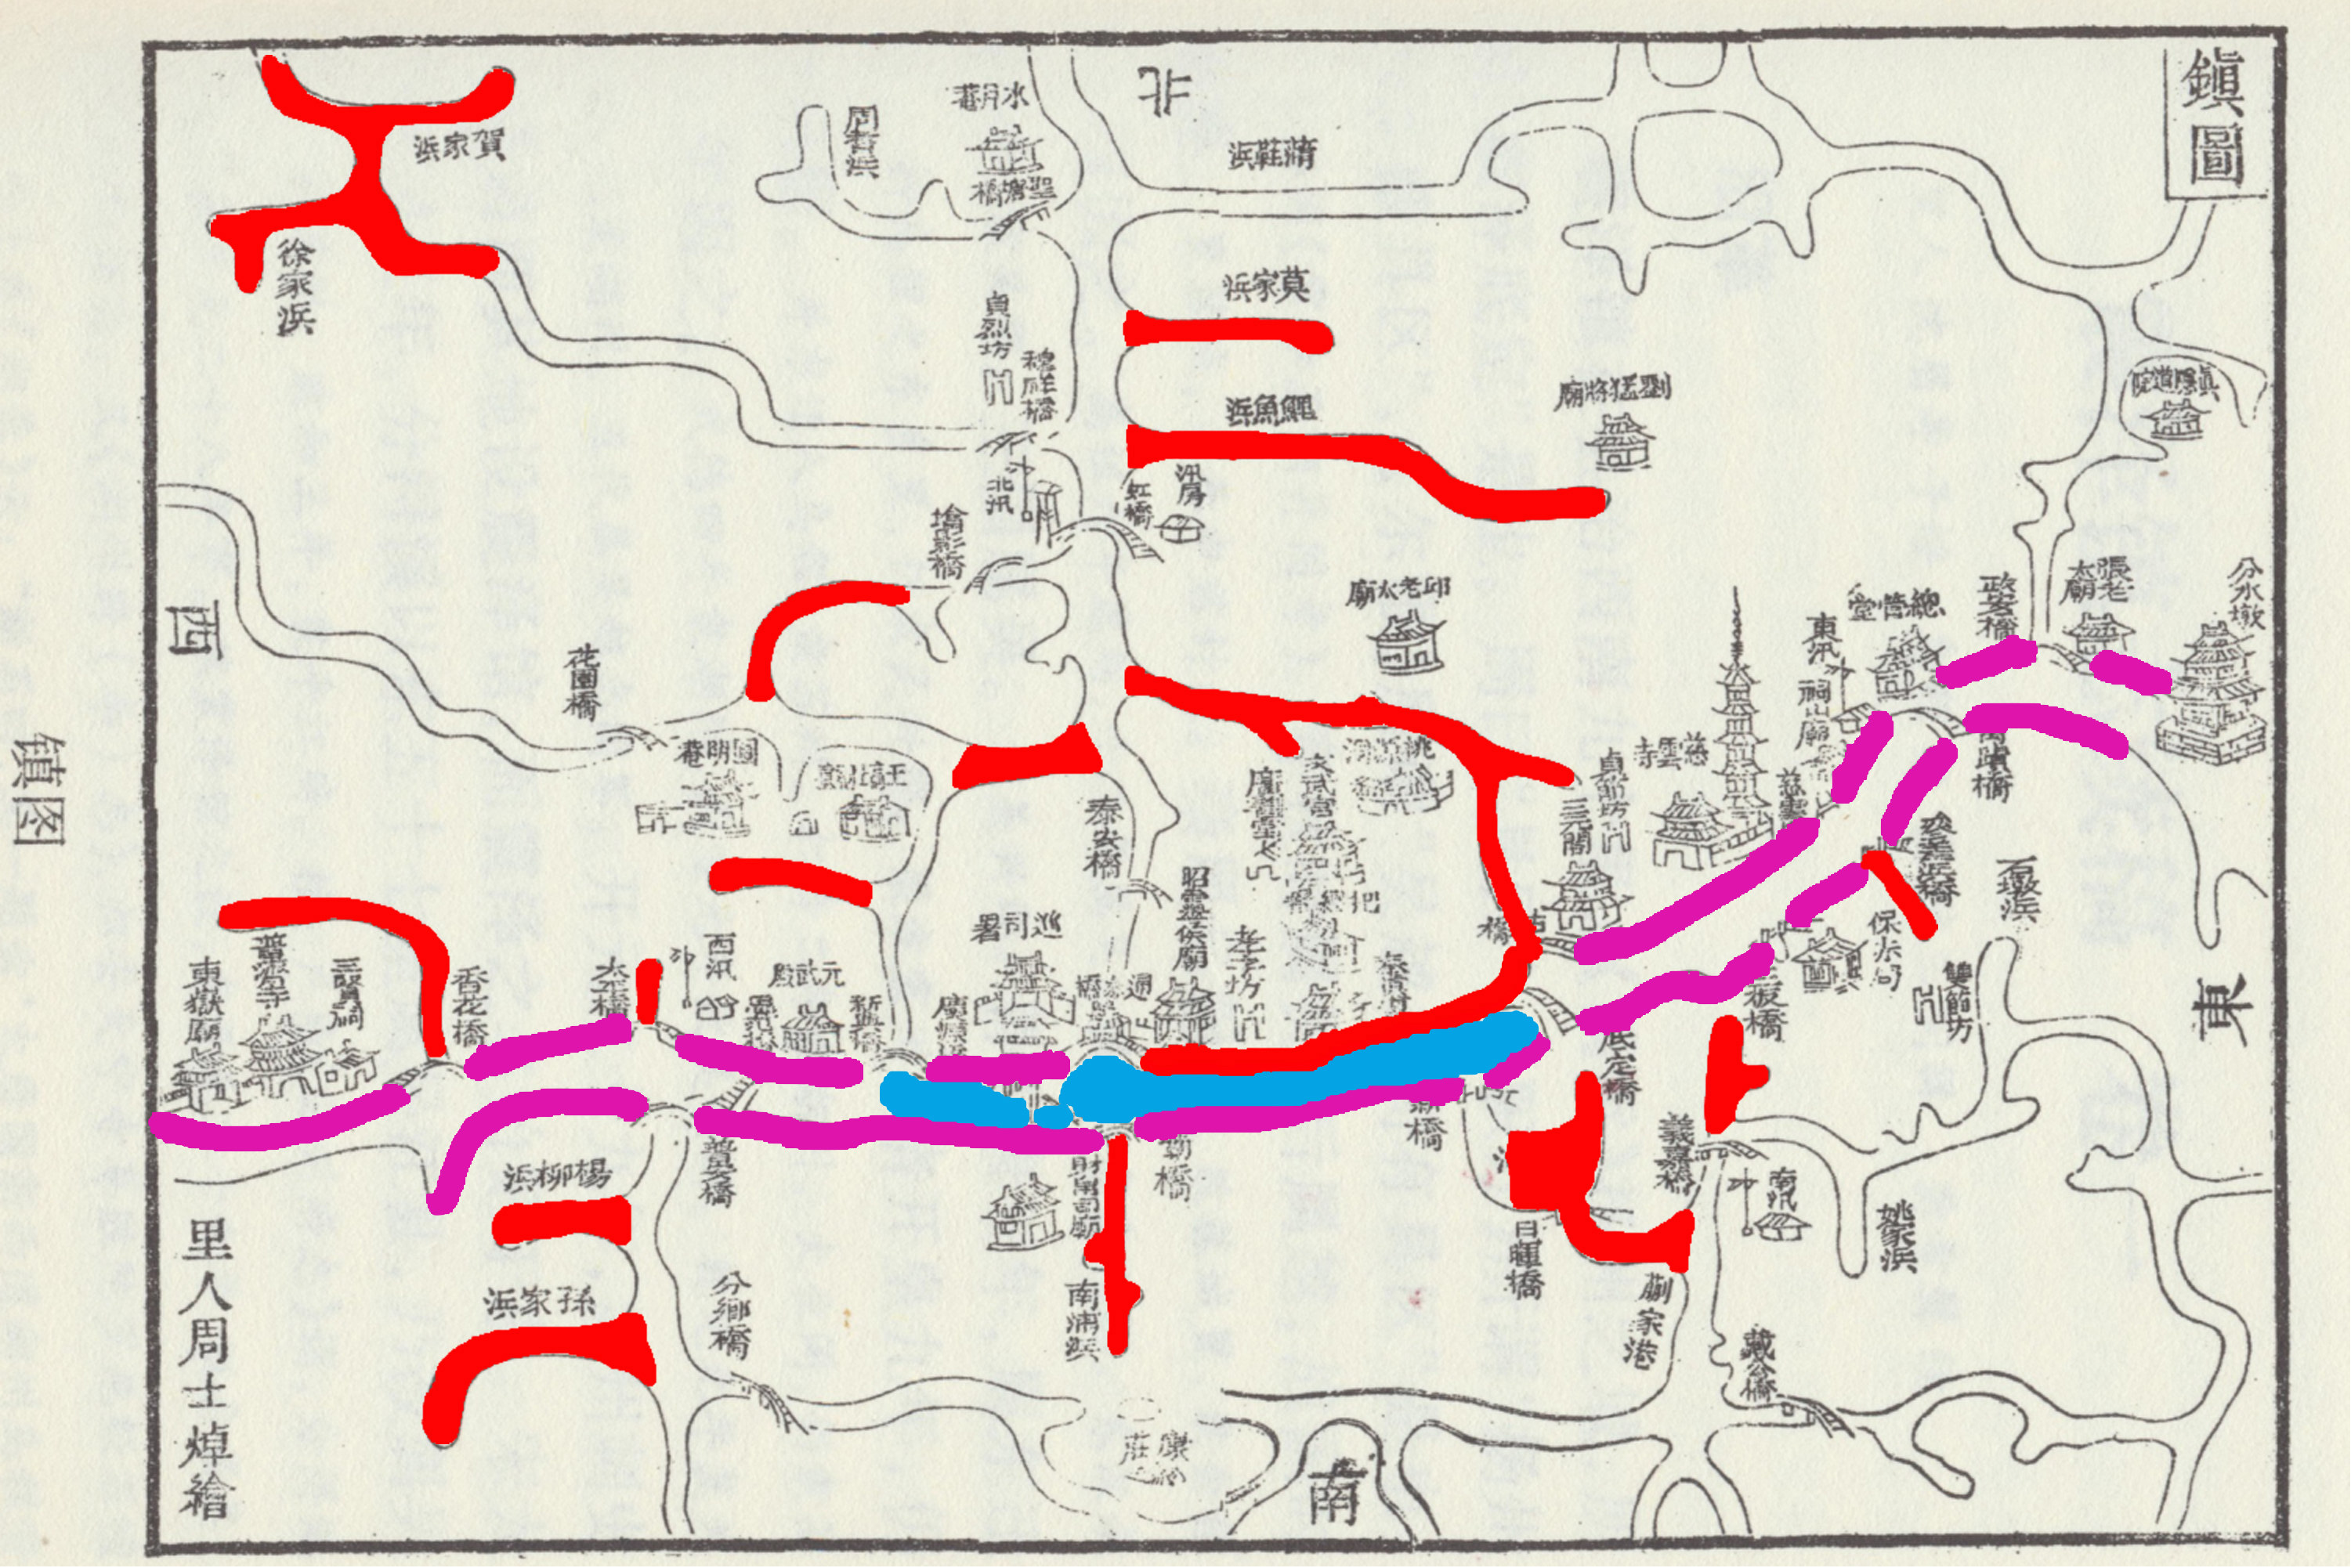 震泽镇水系历史演变图，红色为被填埋河道，蓝色为被占用缩窄河道.jpg